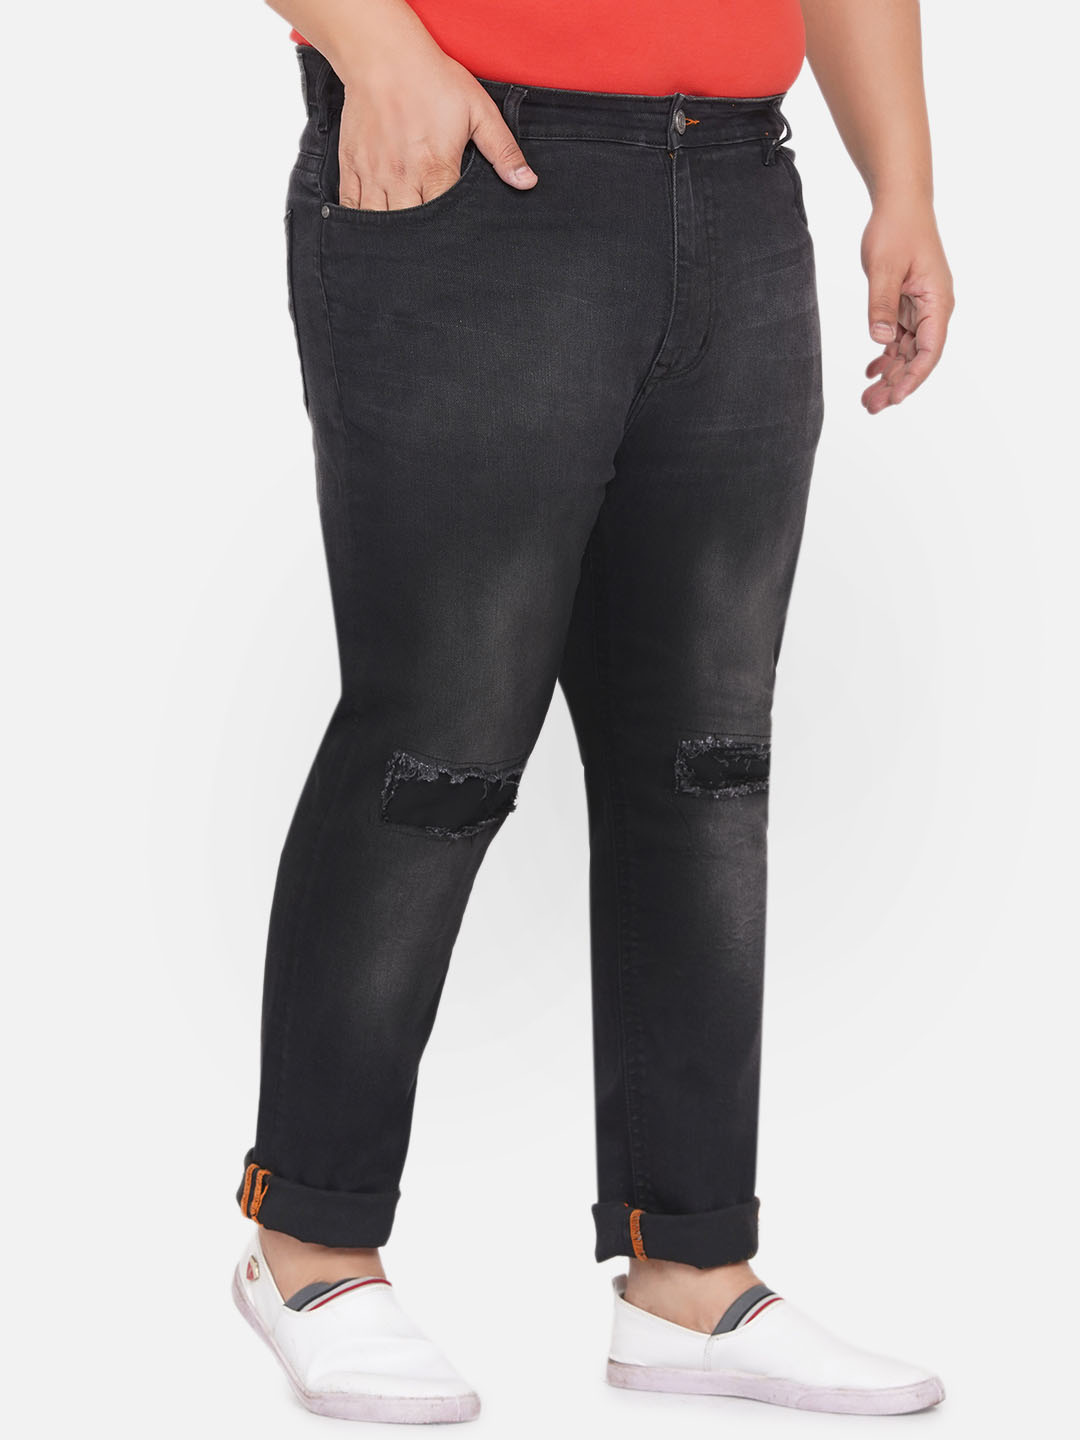 bottomwear/jeans/EJPJ25060/ejpj25060-3.jpg